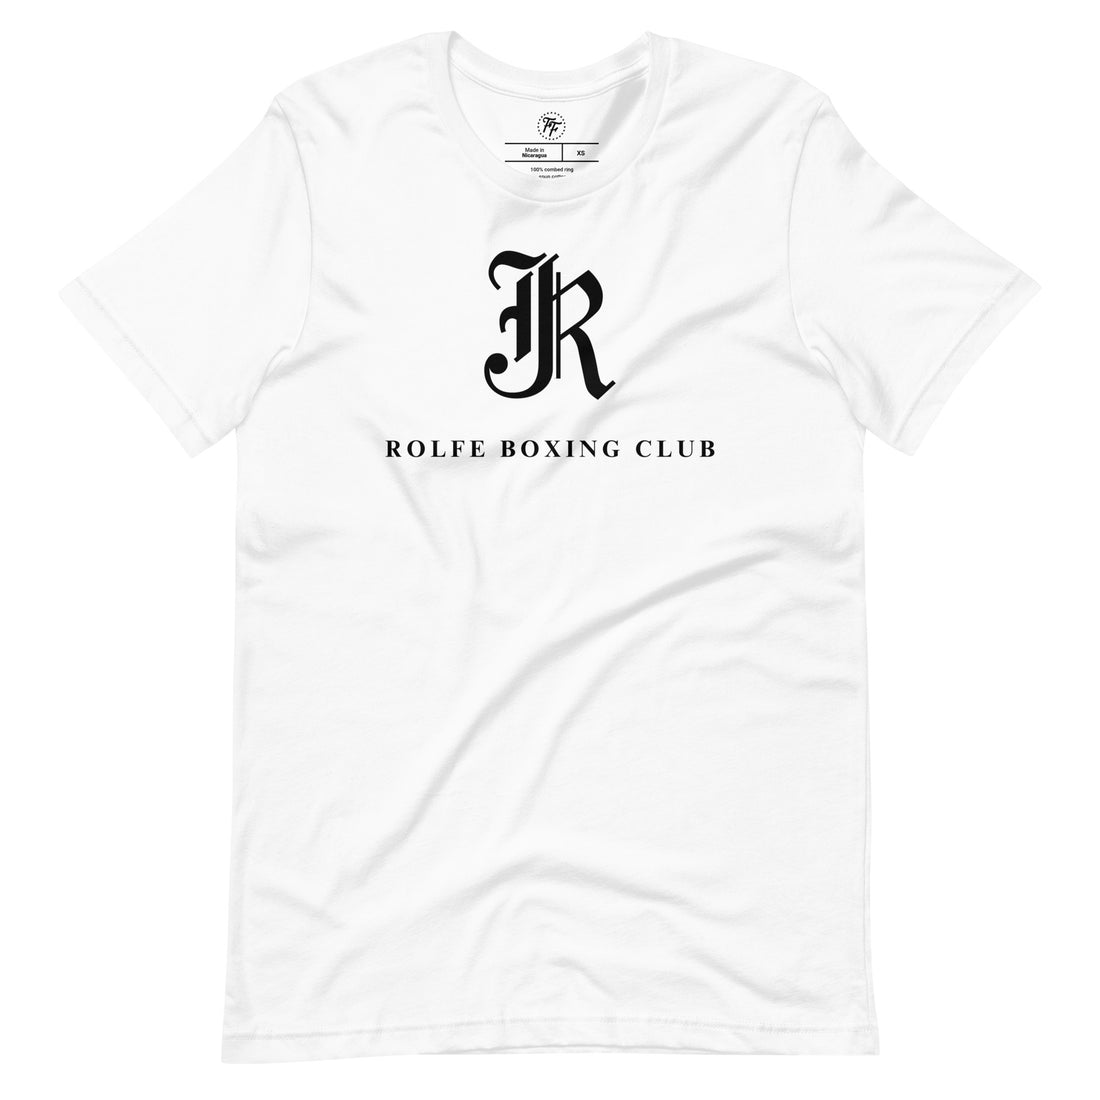 Rolfe Boxing Club Original Shirt [Light]